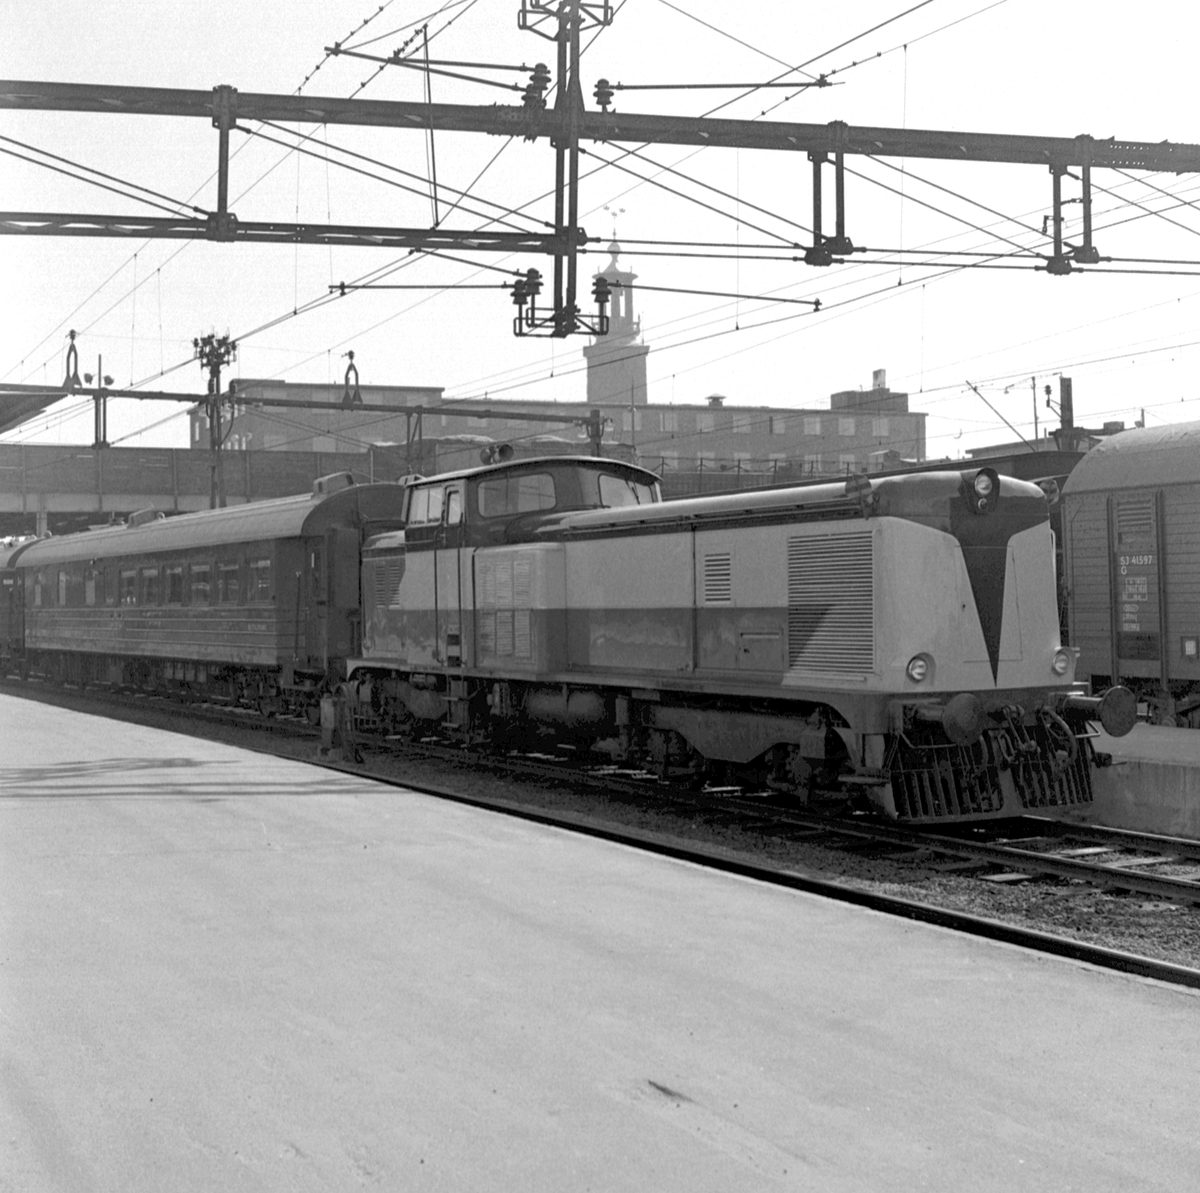 Dieselpneumatiskt lok  Stockholm Nynäs Järnväg SNJ T6 i folkmun "Påfågeln" eller "Papegojan". Motala Verkstads provlok skrotades 1969 endast 10 år gammalt.
Källa: "Nynäsbanan", Kenneth Landgren.
SJ G 41597